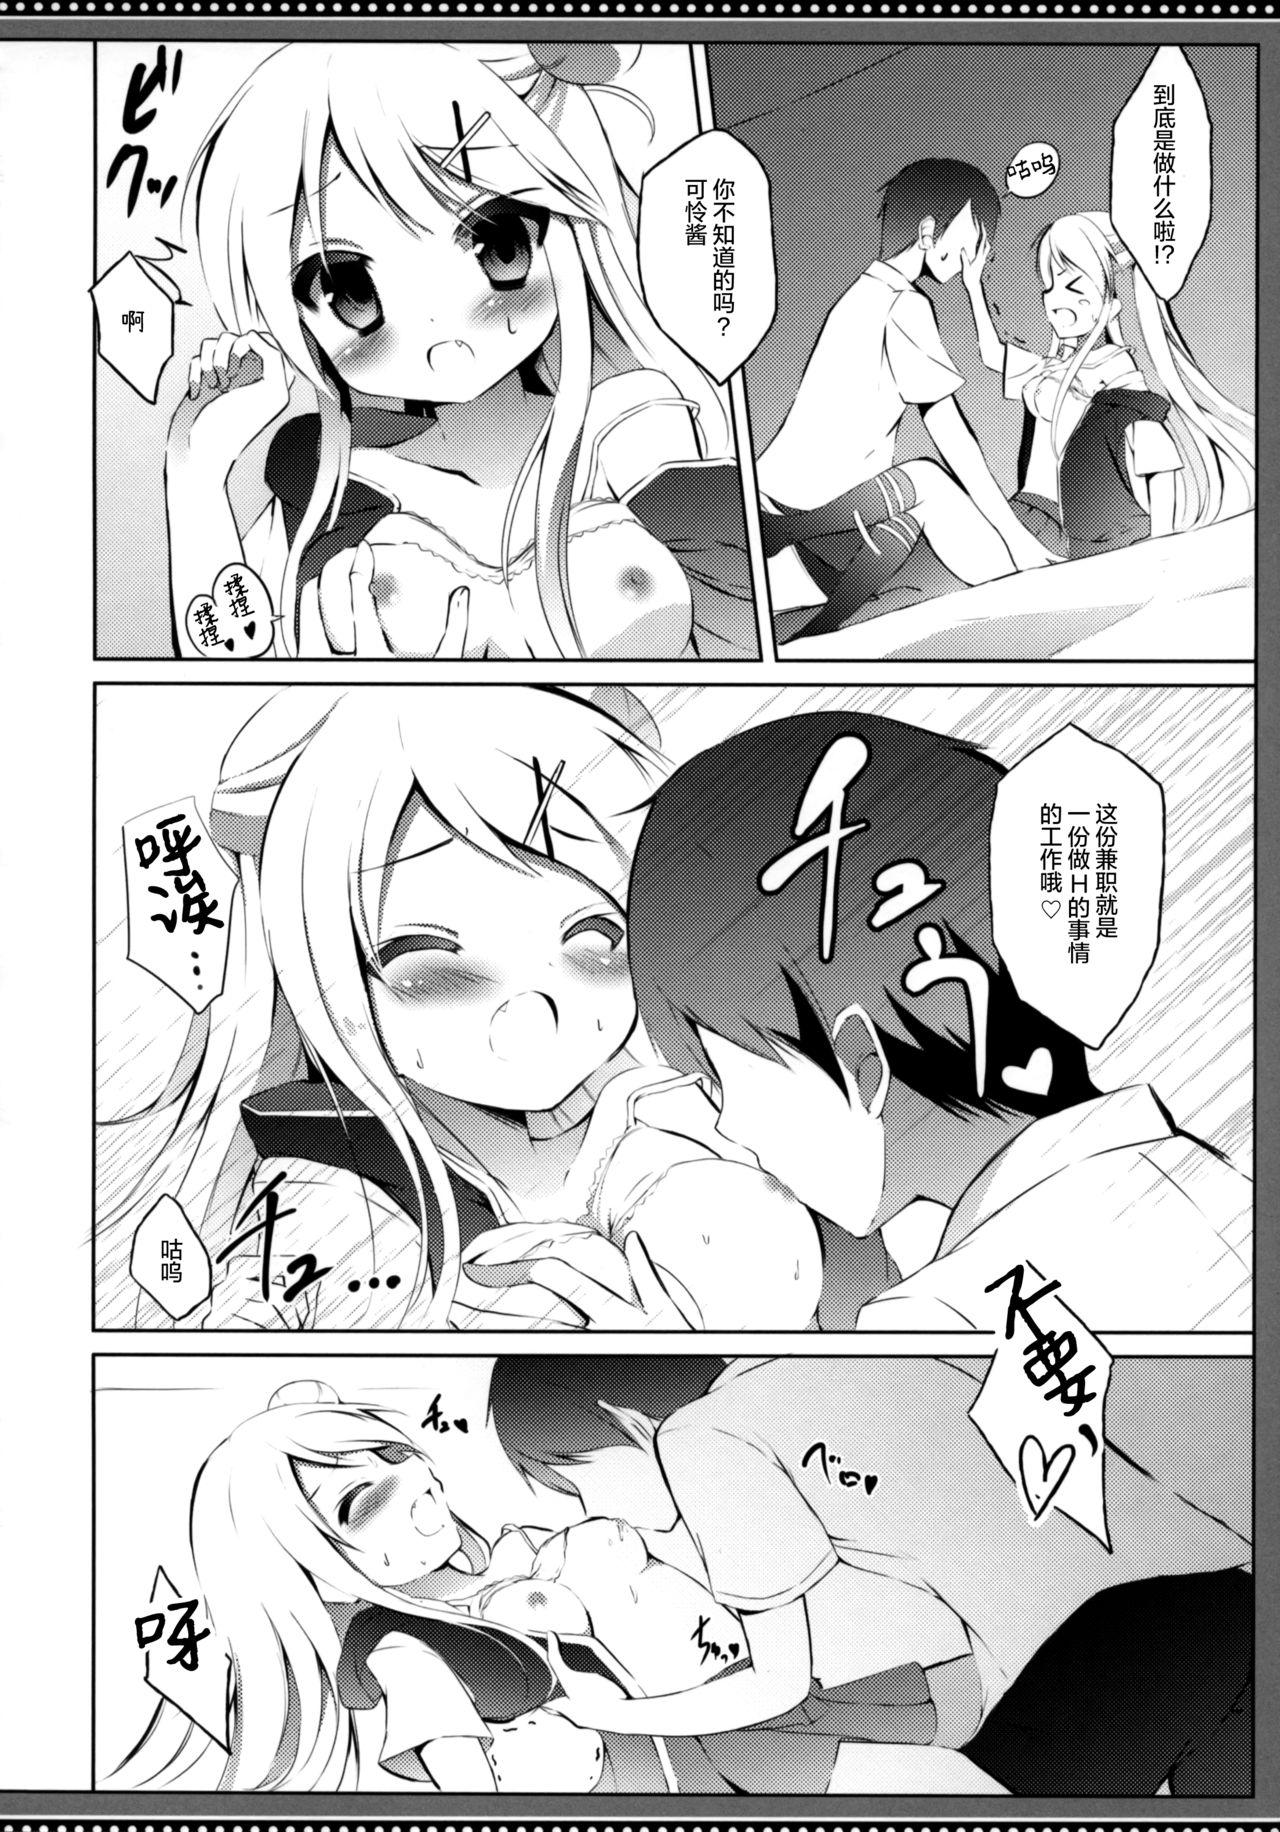 Condom Karen-chan TU Owake desu! - Kiniro mosaic Morrita - Page 10